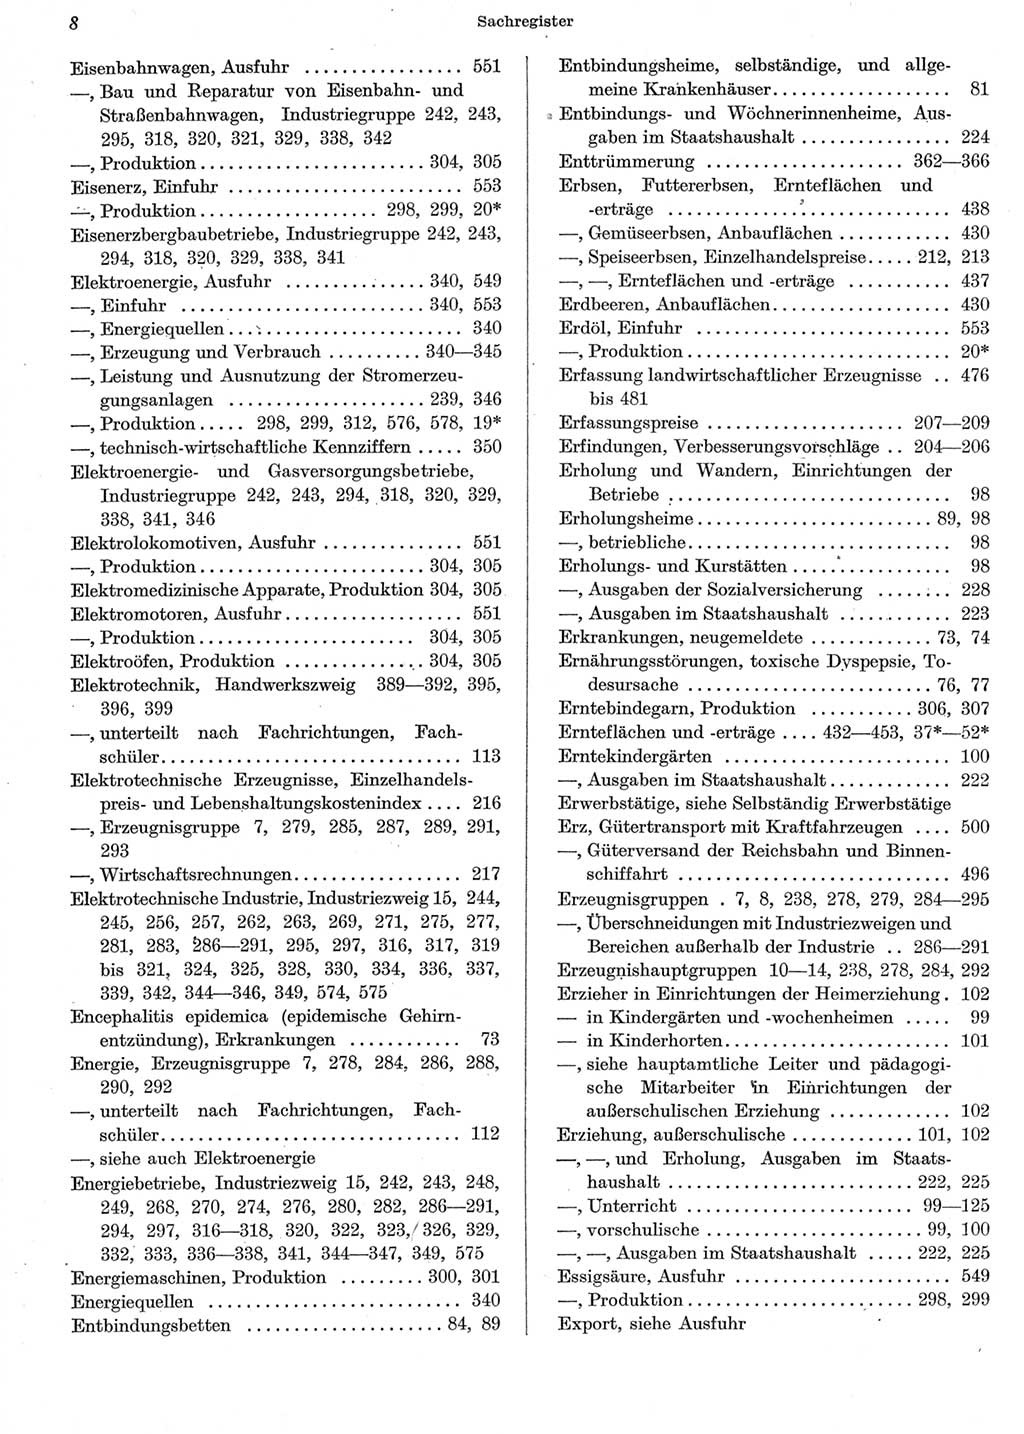 Statistisches Jahrbuch der Deutschen Demokratischen Republik (DDR) 1962, Seite 8 (Stat. Jb. DDR 1962, S. 8)